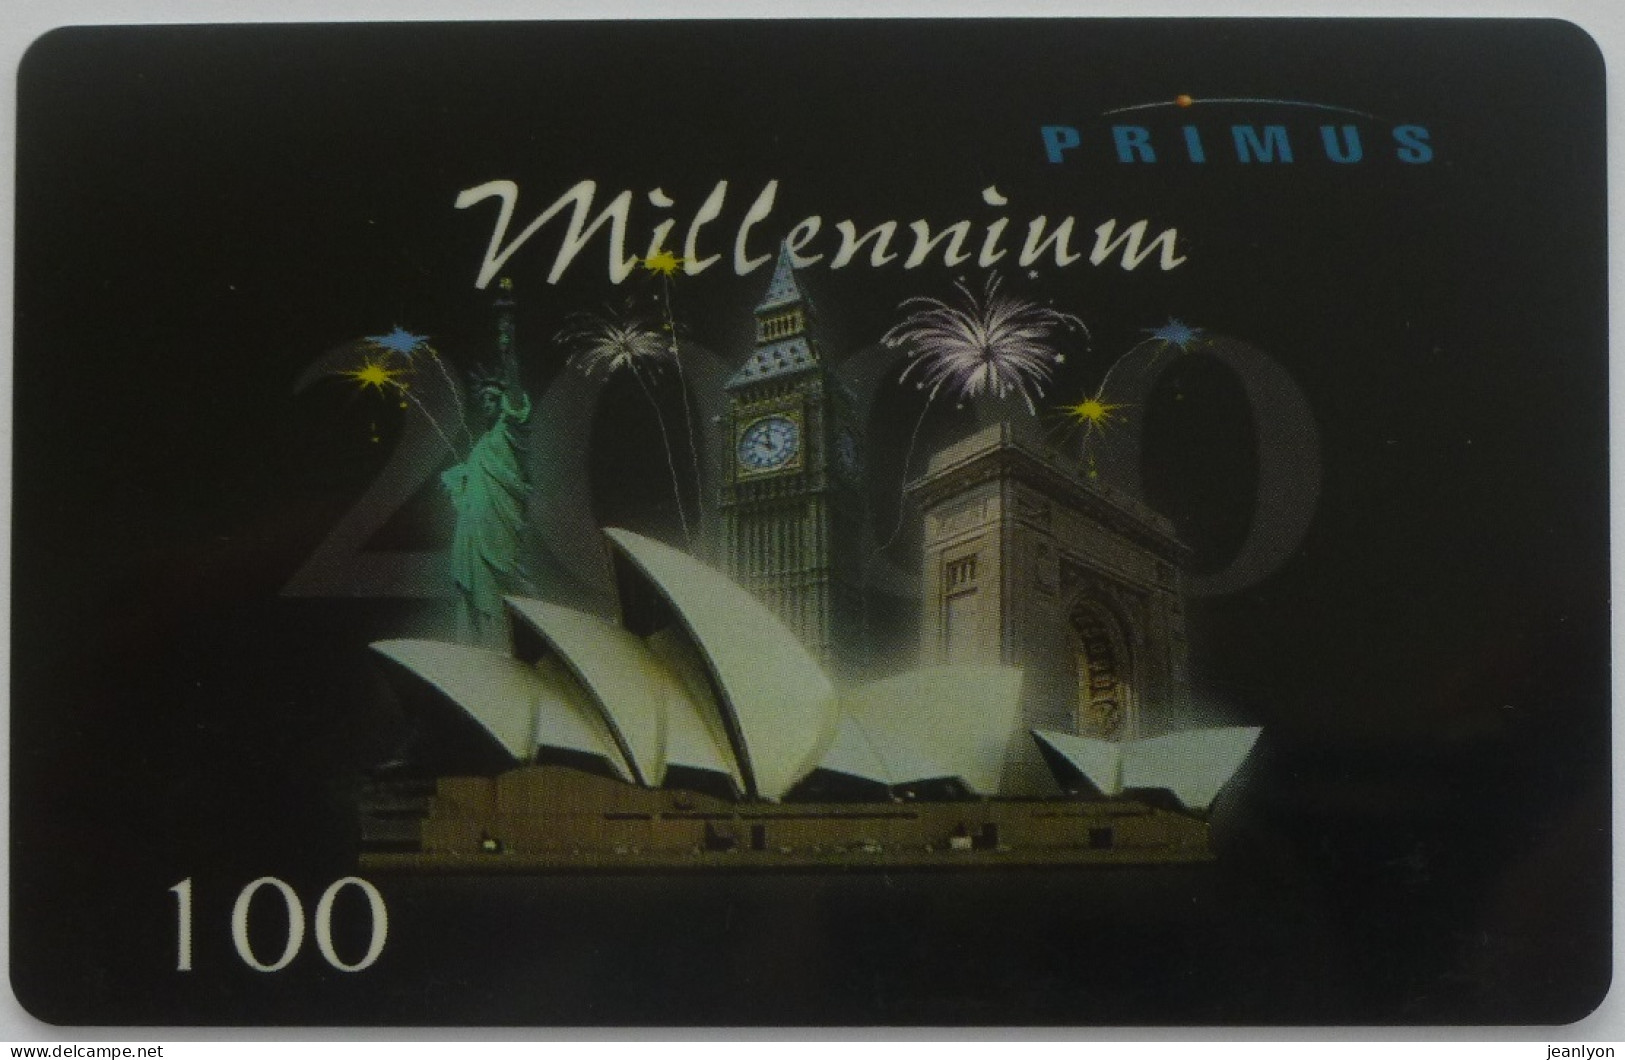 MILLENNIUM 2000 / Arc Triomphe - Big Ben - Statue Liberté - Carte Téléphone Prépayée PRIMUS Utilisée - Paisajes